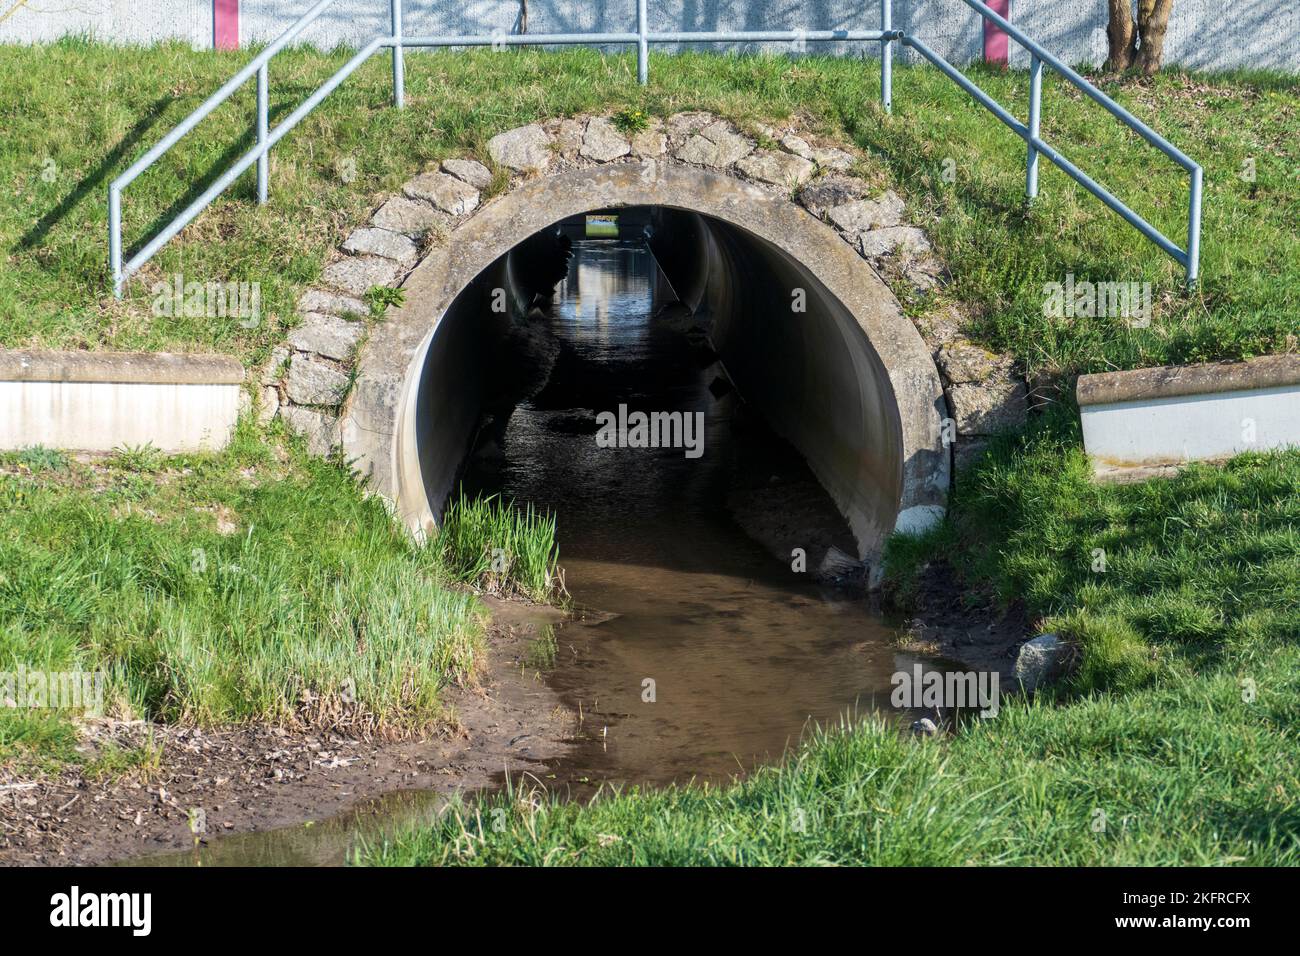 Abwasserkanal, Tunnel mit Spiegelung und Licht am Ende Stock Photo